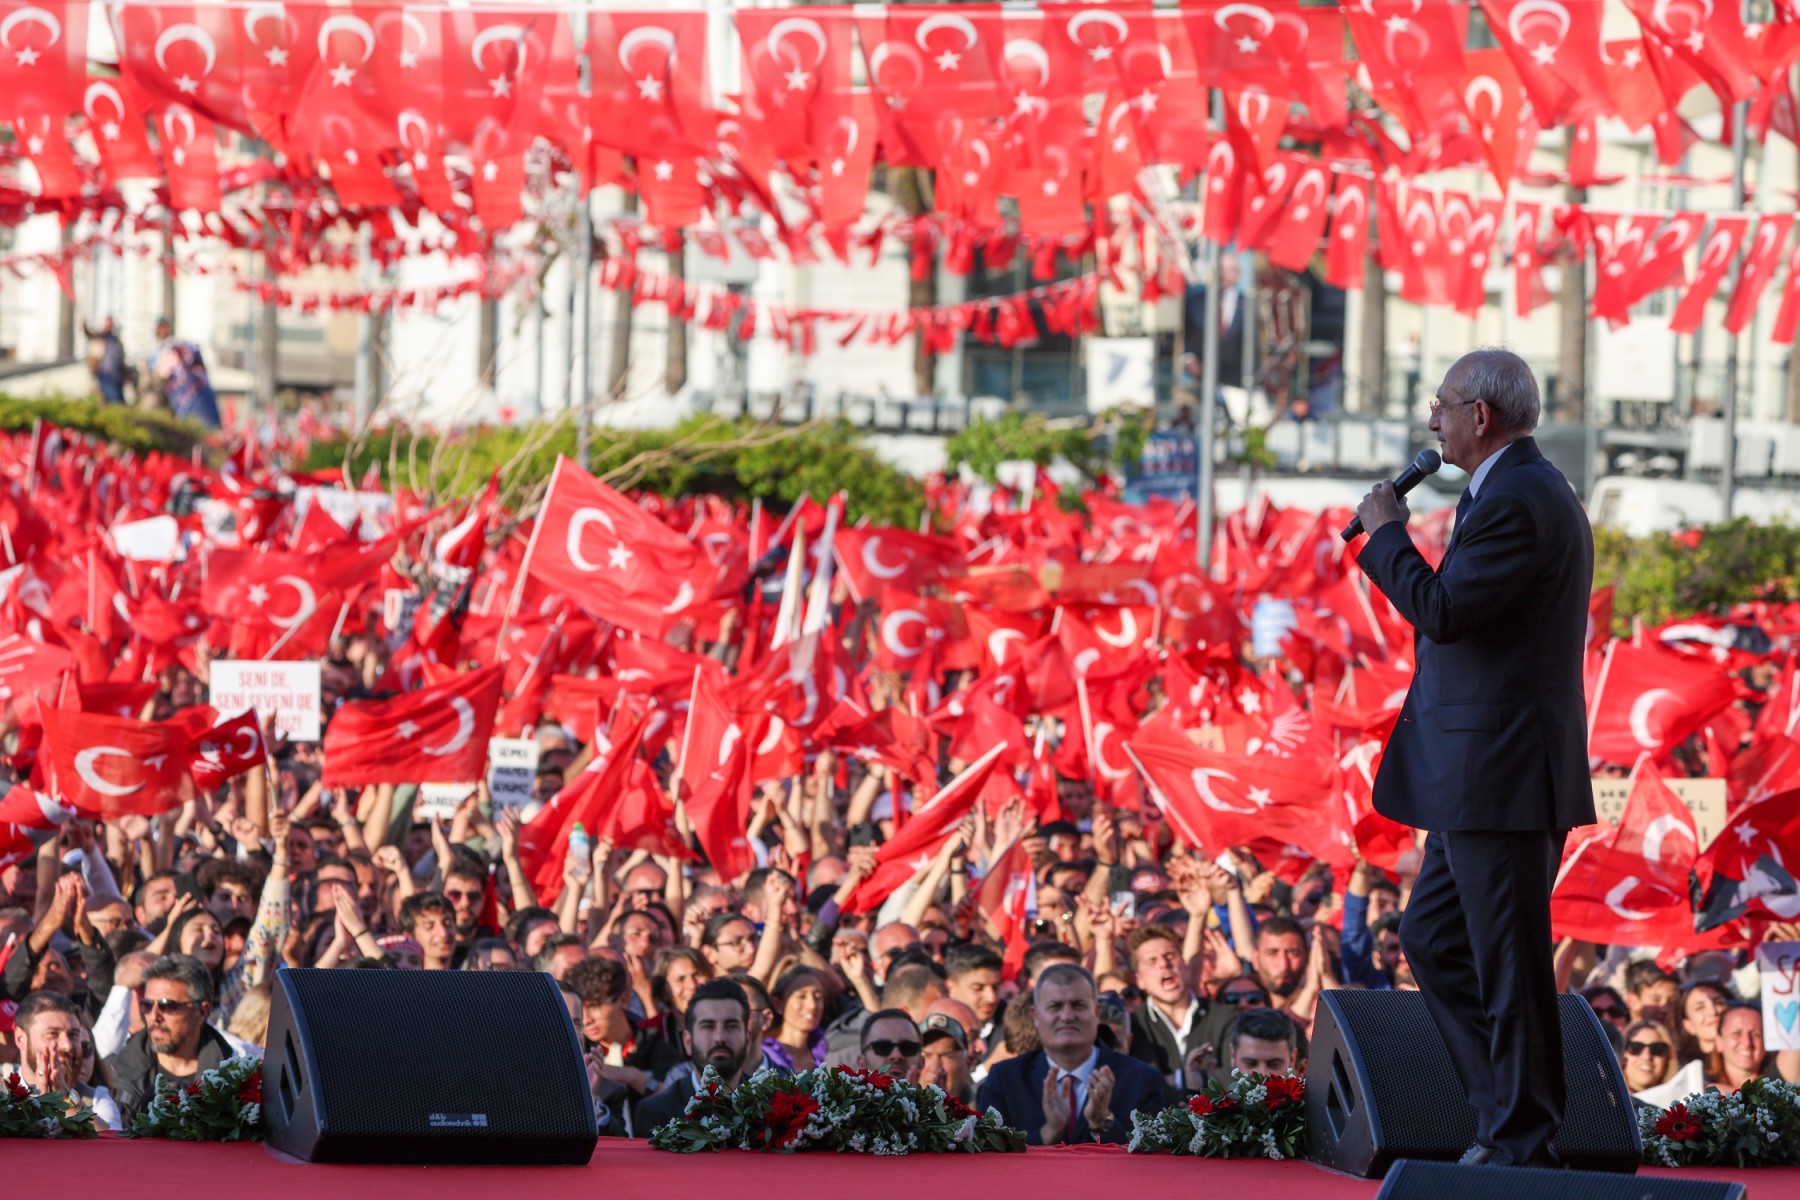 Kemal Kılıçdaroğlu.jpg